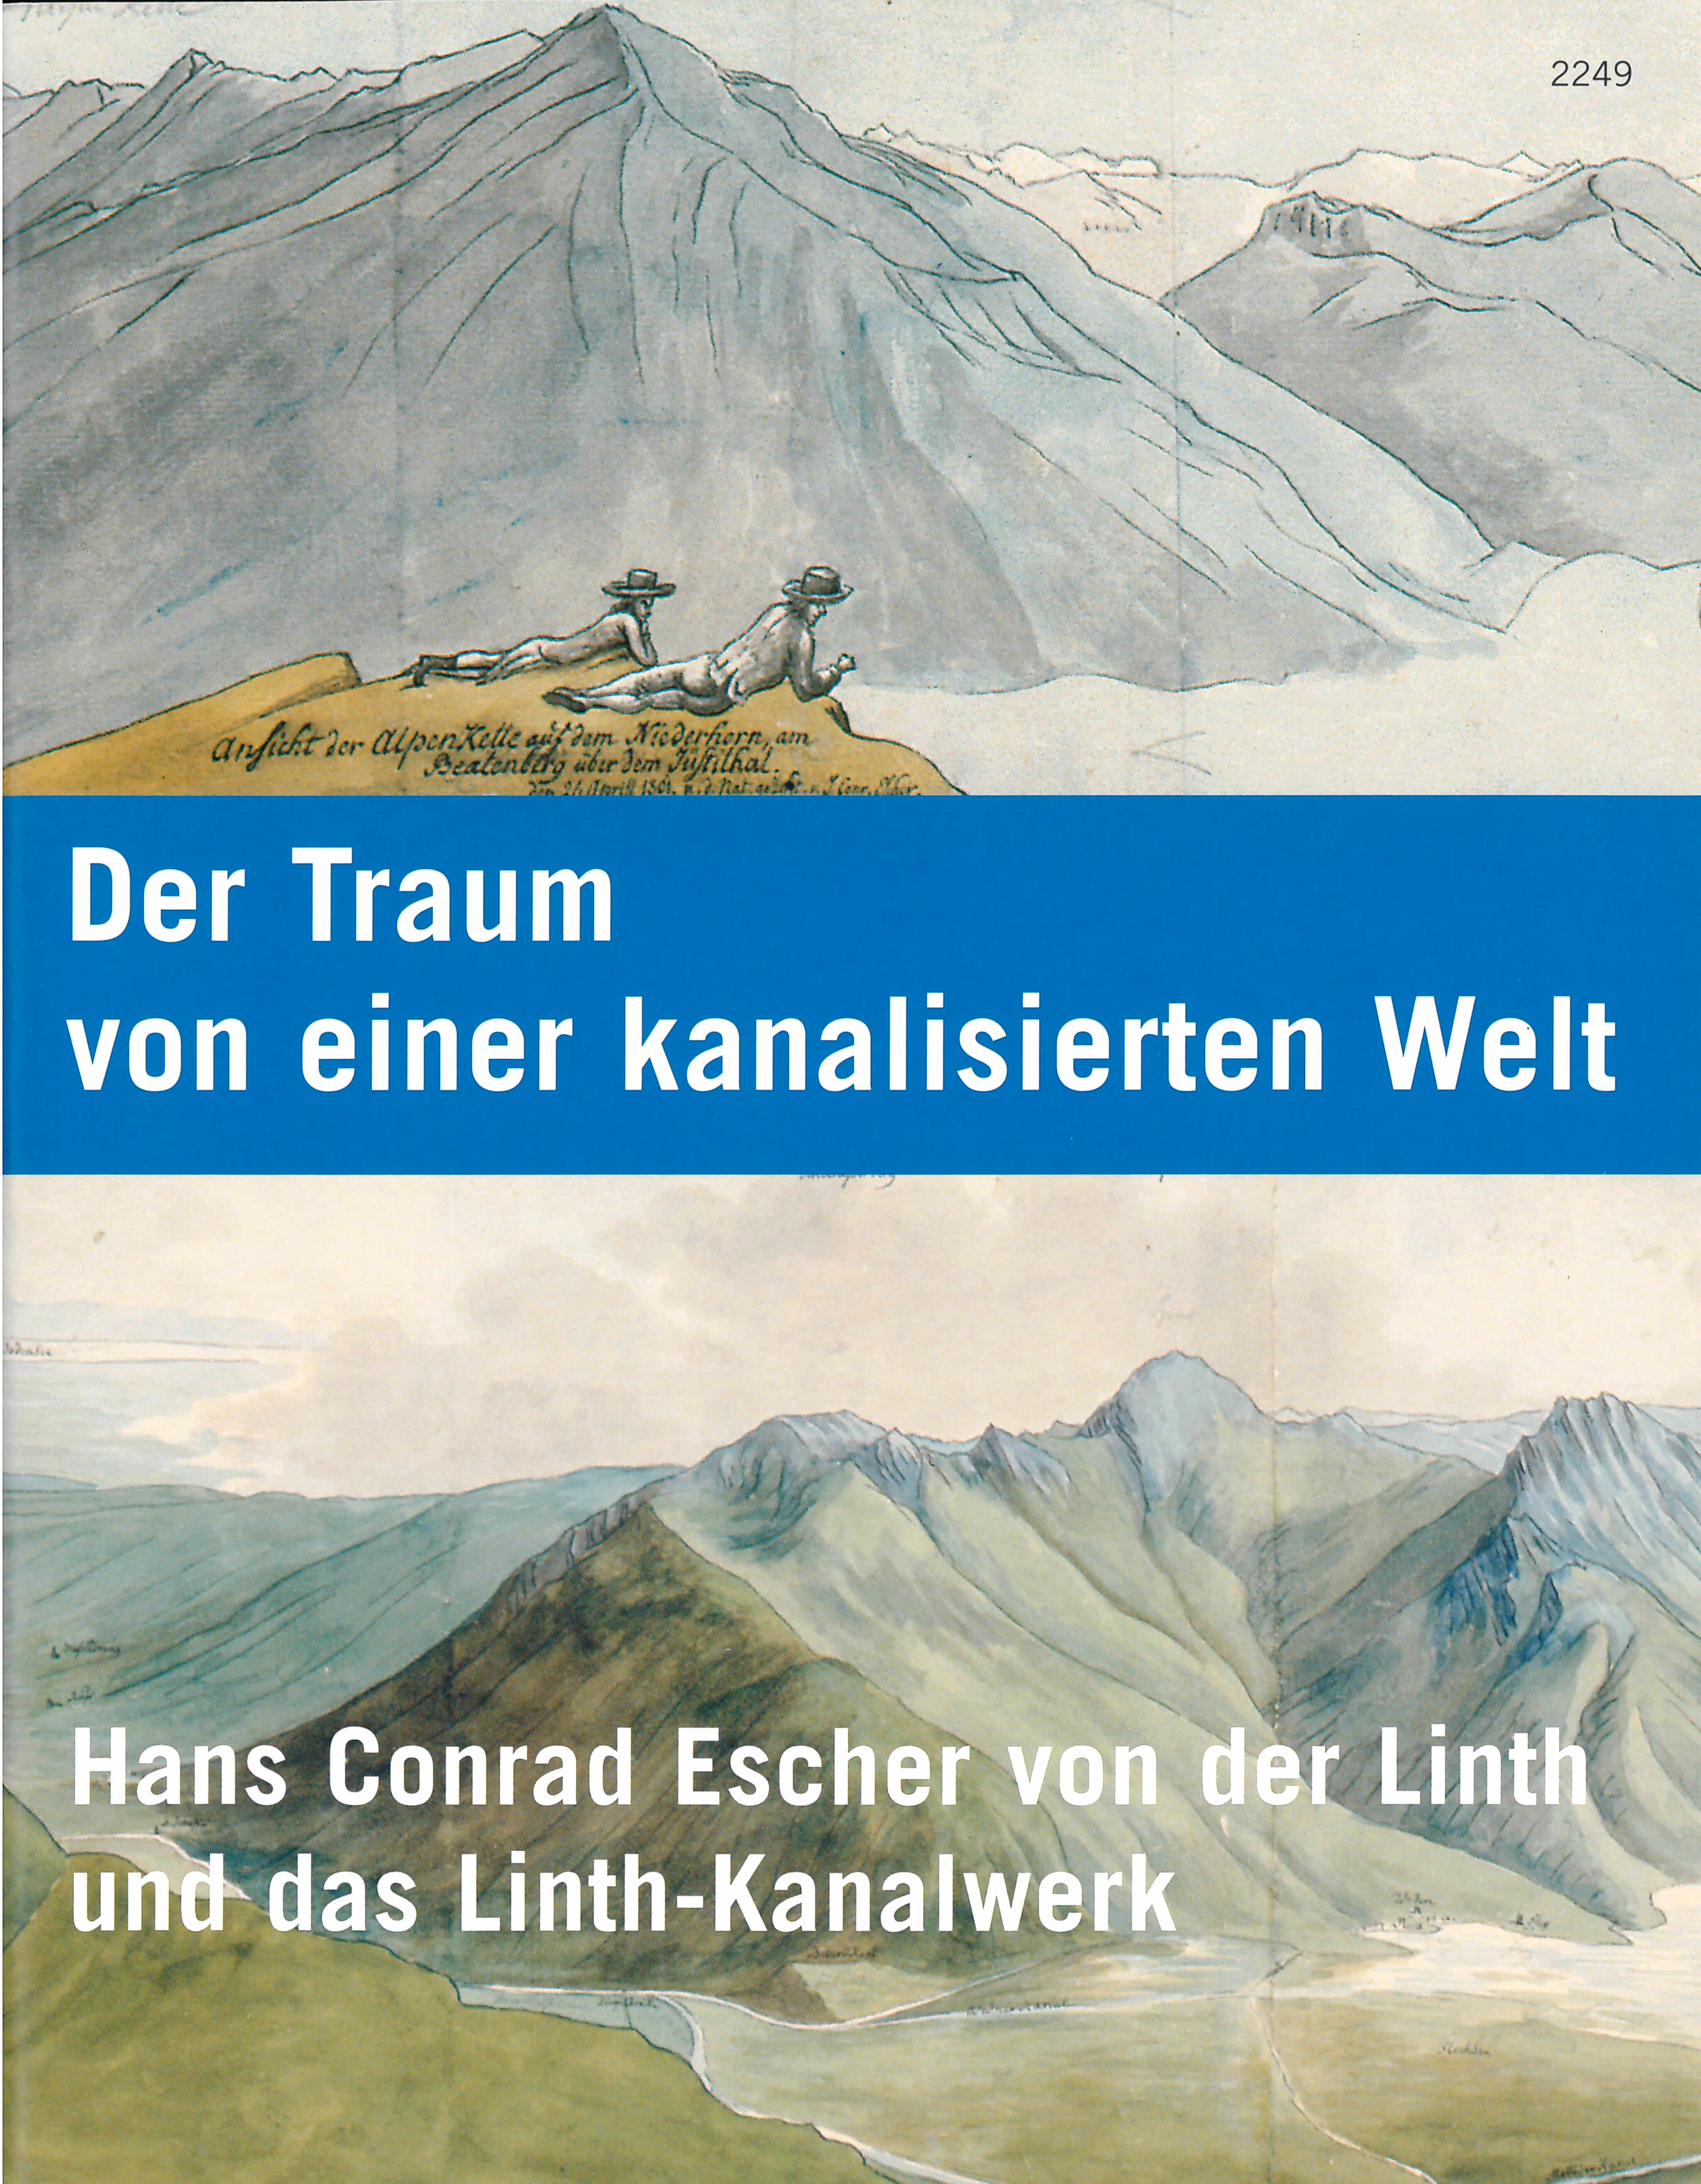 Der Traum von einer kanalisierten Welt. Hans Conrad Escher von der Linth und das Linth-Kanalwerk, Buch von Severin Perrig, SJW